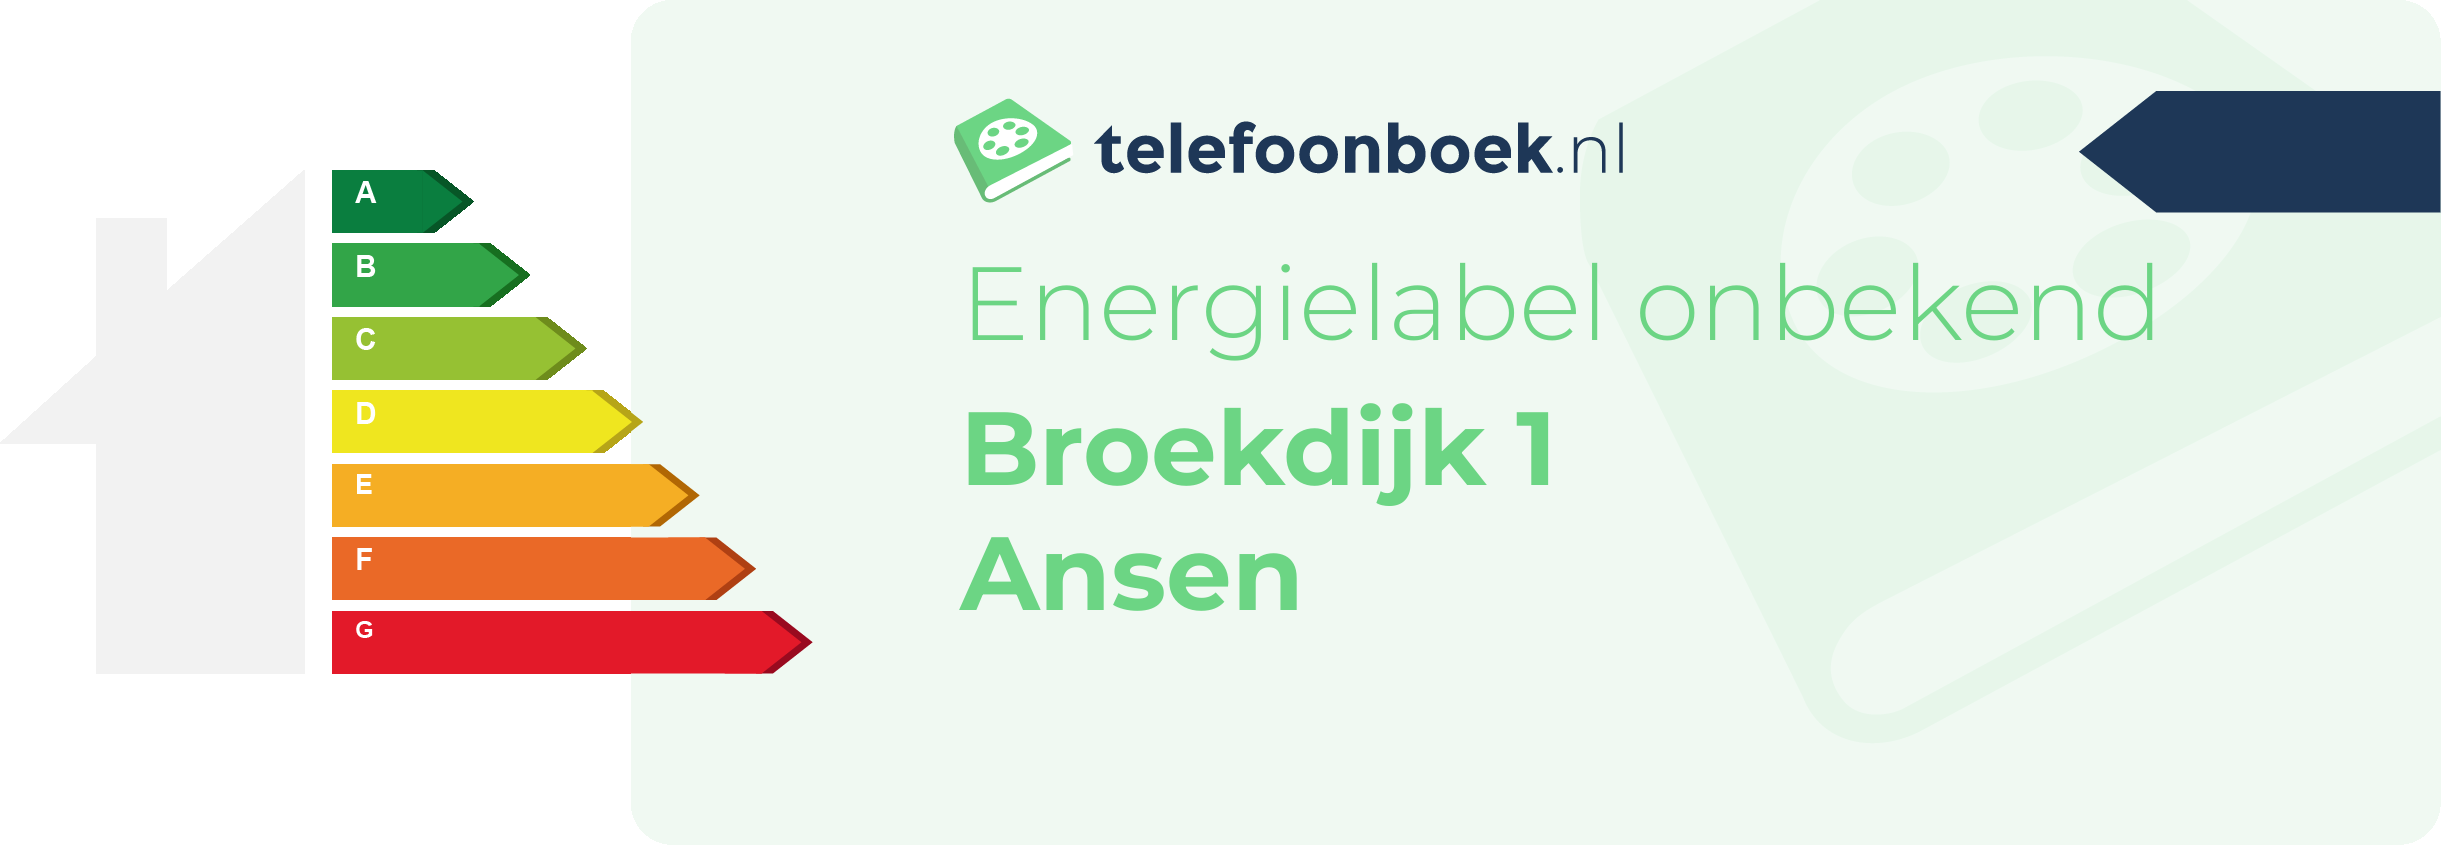 Energielabel Broekdijk 1 Ansen